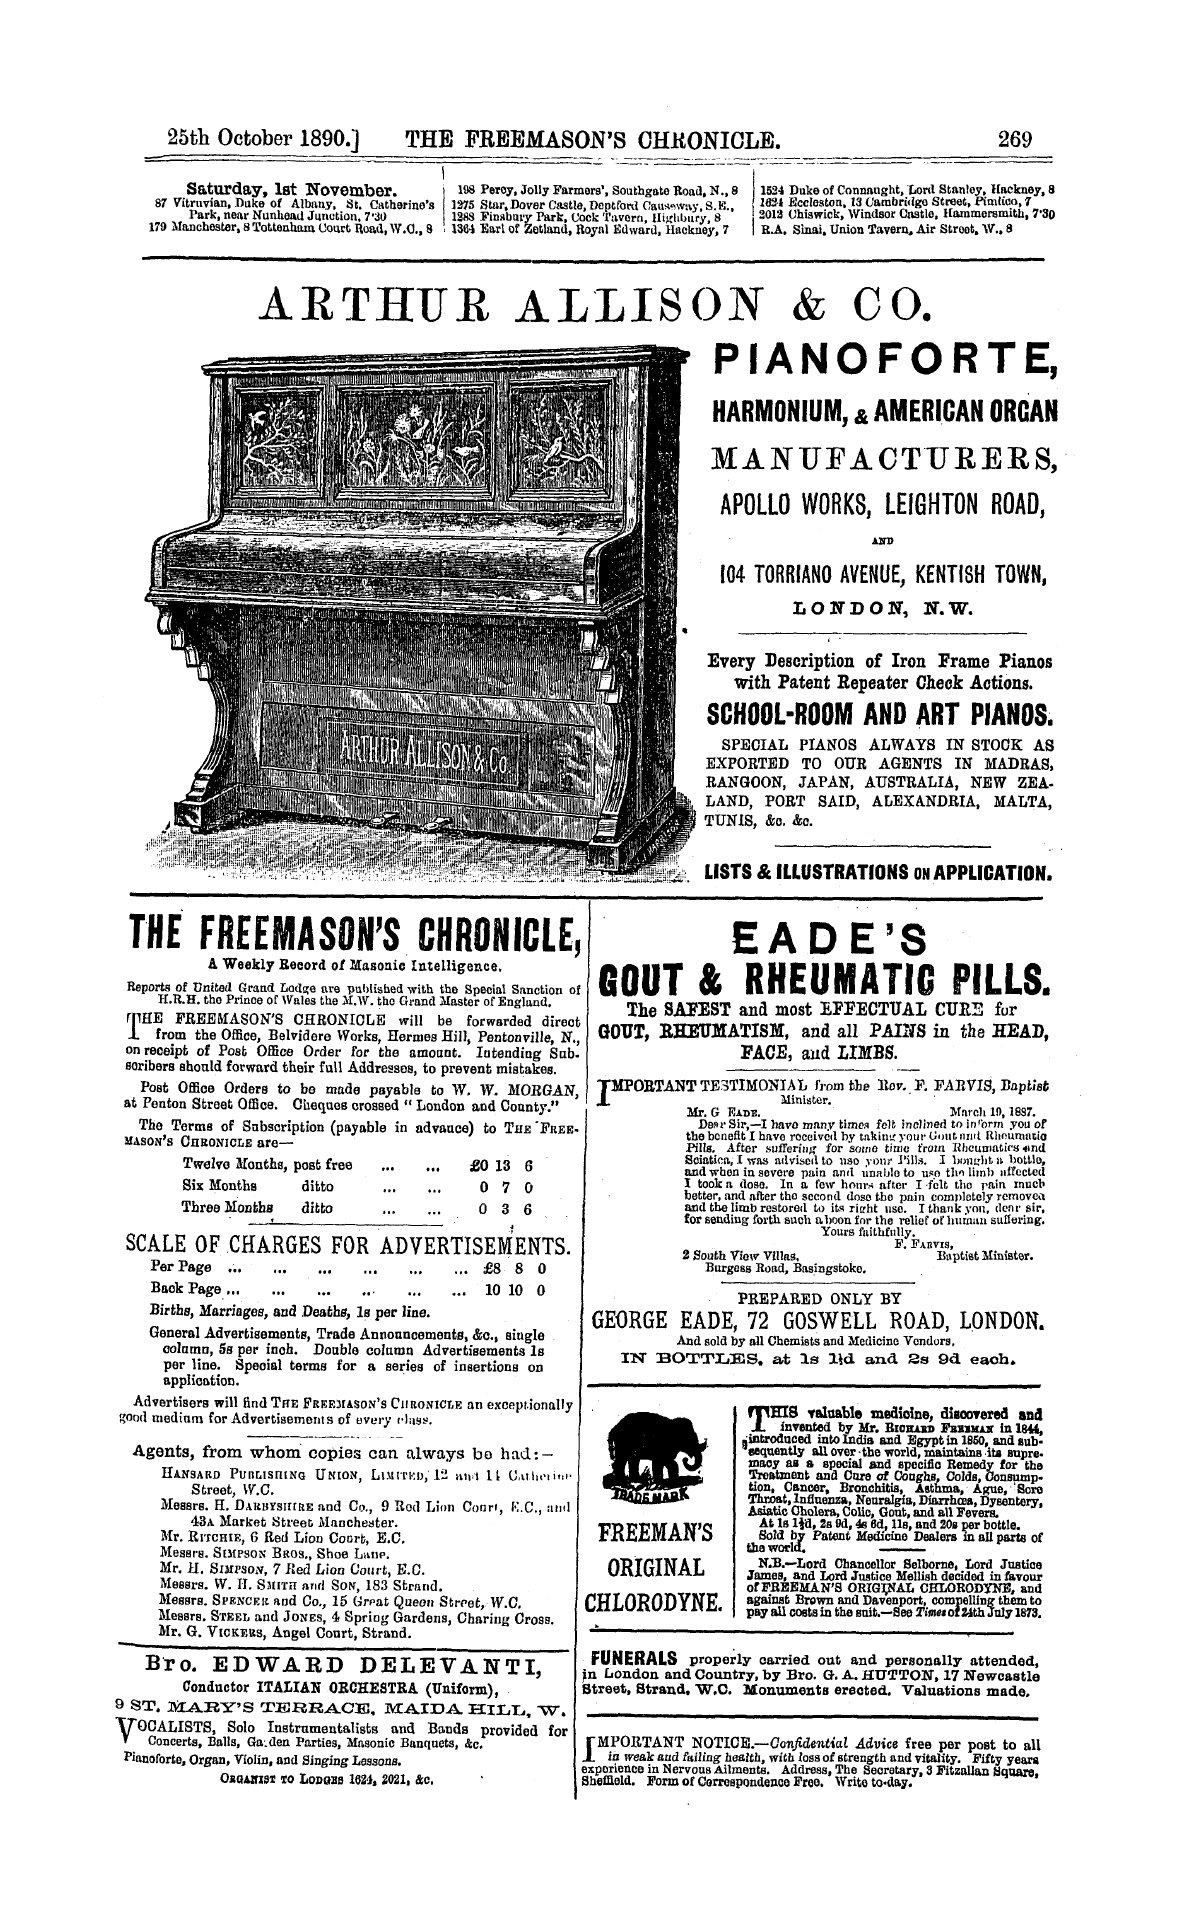 The Freemason's Chronicle: 1890-10-25 - Instruction.